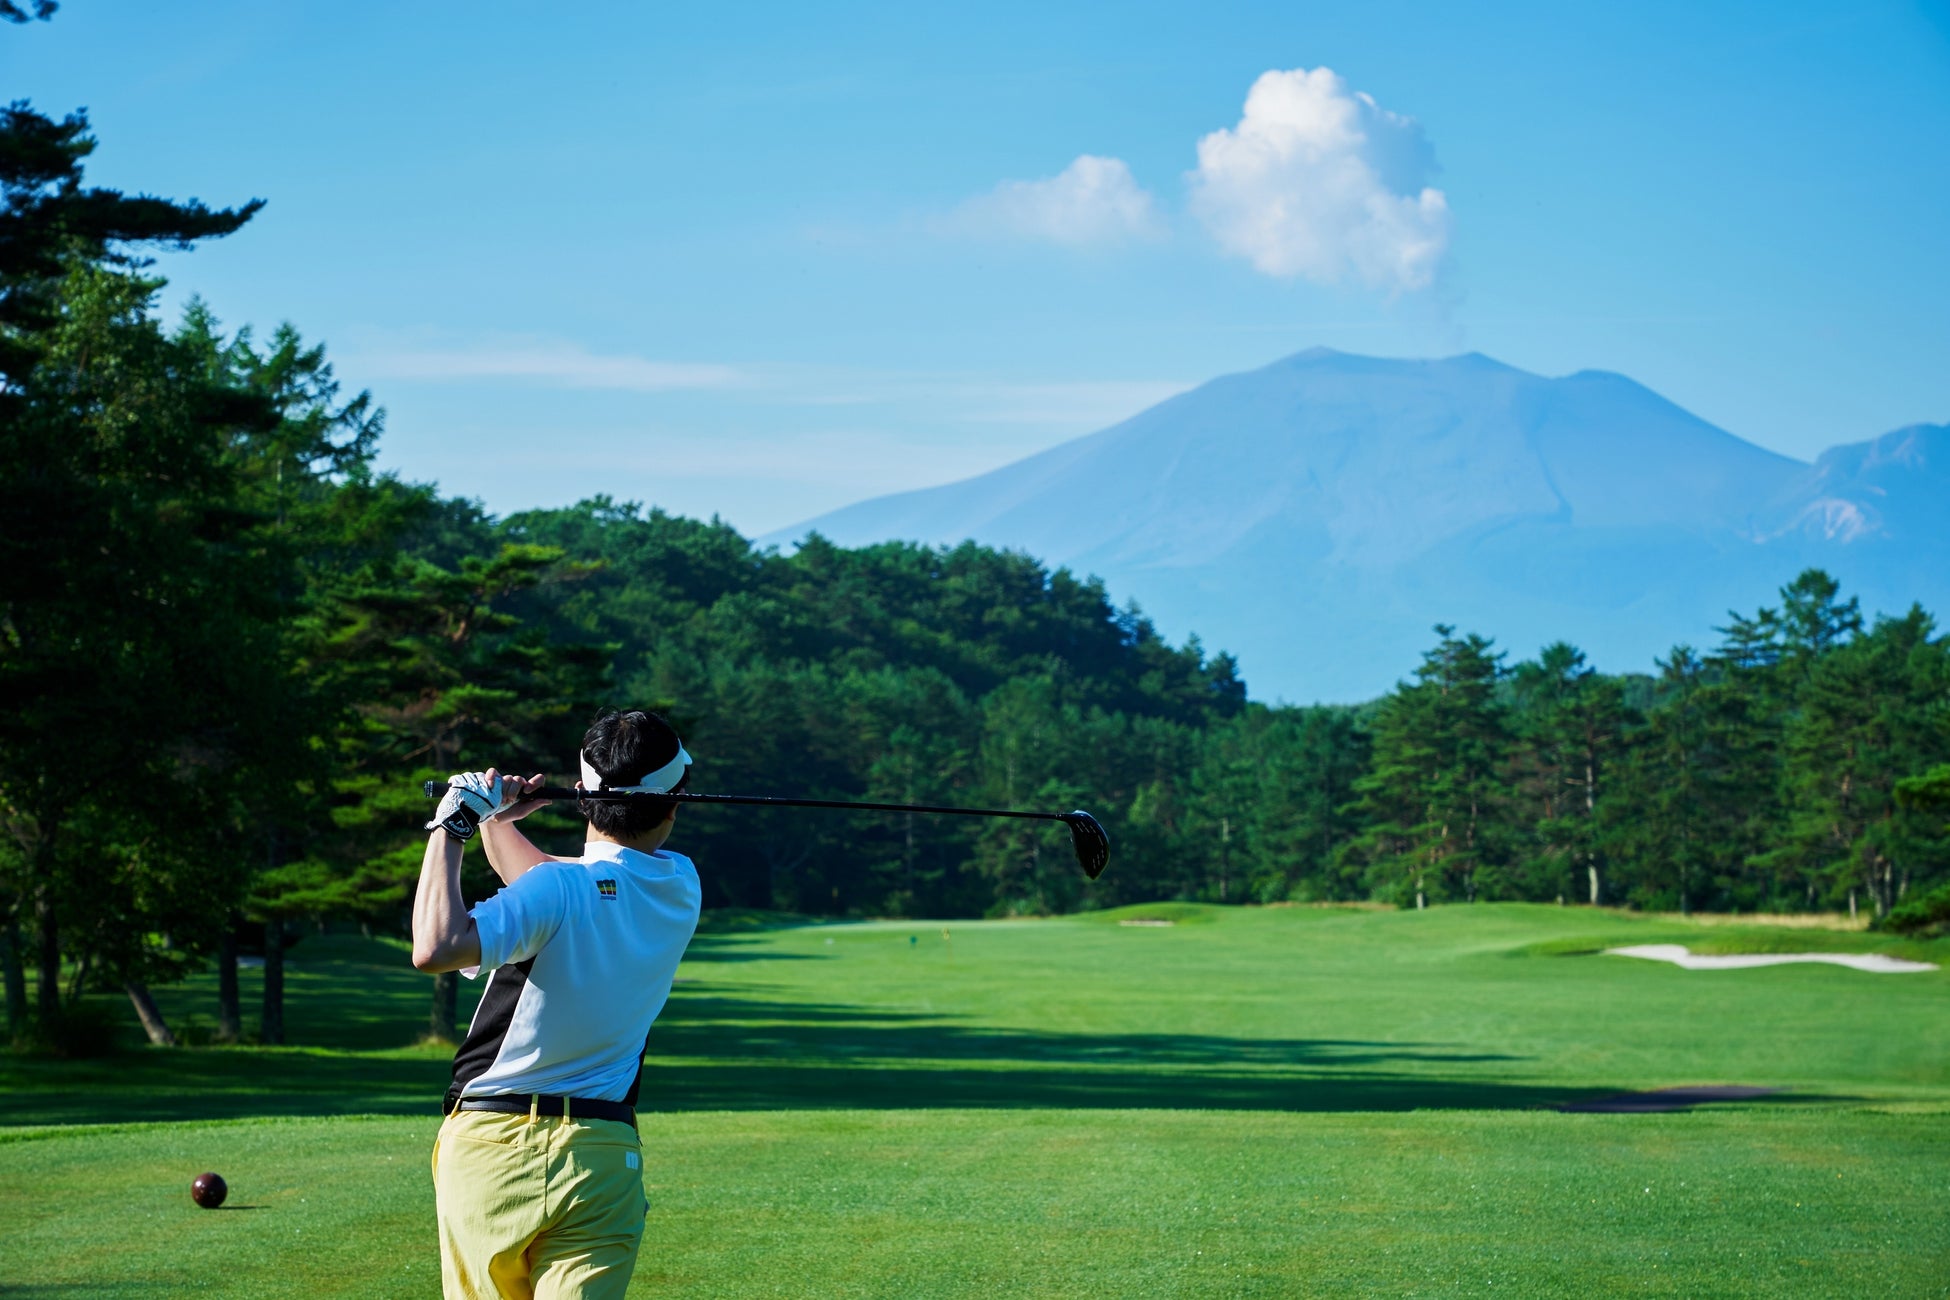 【嬬恋高原ゴルフ場】より快適に、よりスムーズに標高1,100mの高原ゴルフを満喫